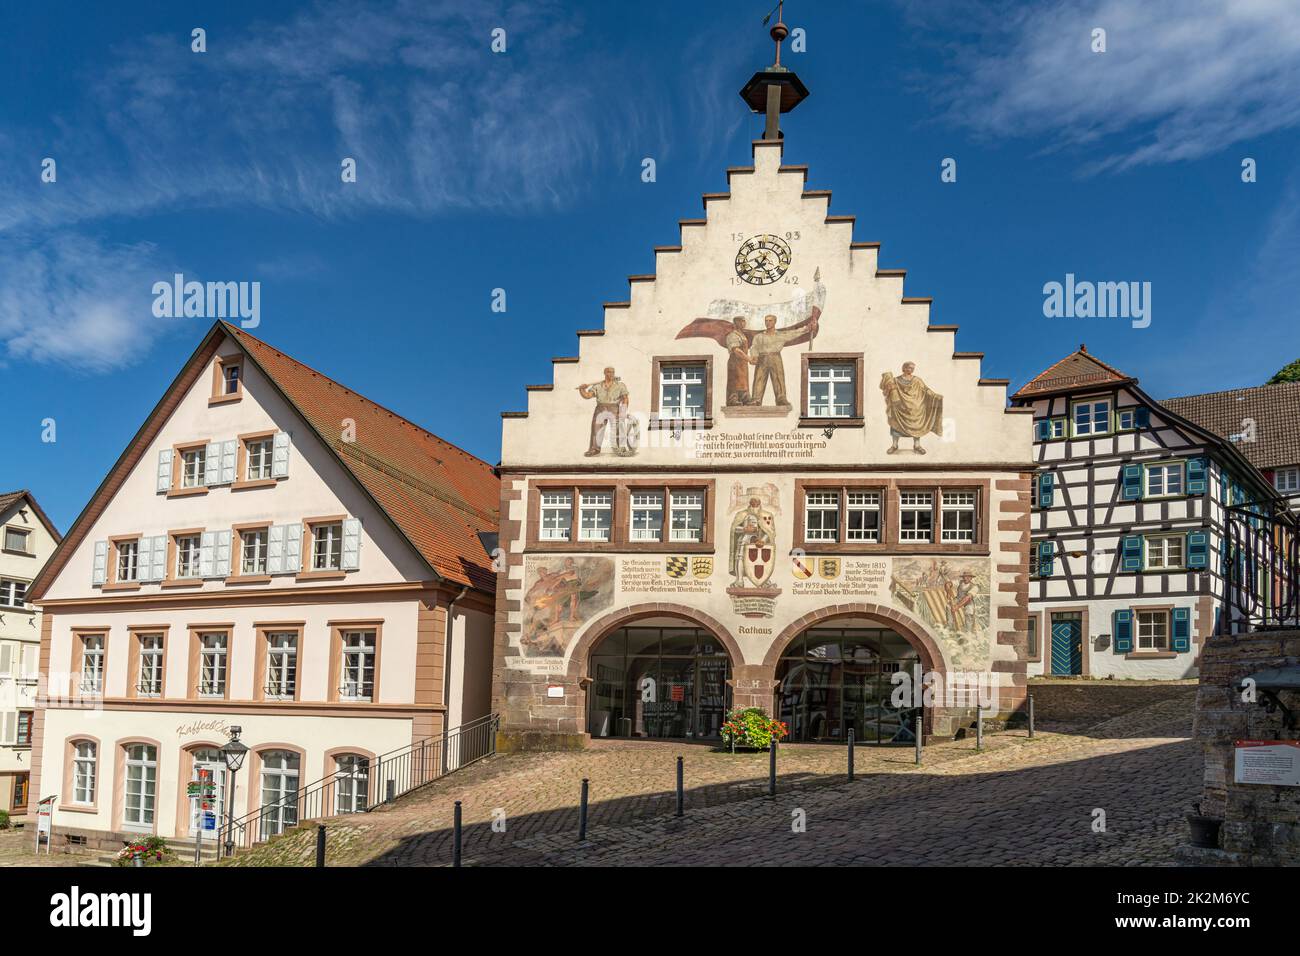 DAS Rathaus in Schiltach, Schwarzwald, Bade-Wurtemberg, Allemagne | Hôtel de ville de Schiltach, Forêt Noire, Bade-Wurtemberg, Allemagne Banque D'Images